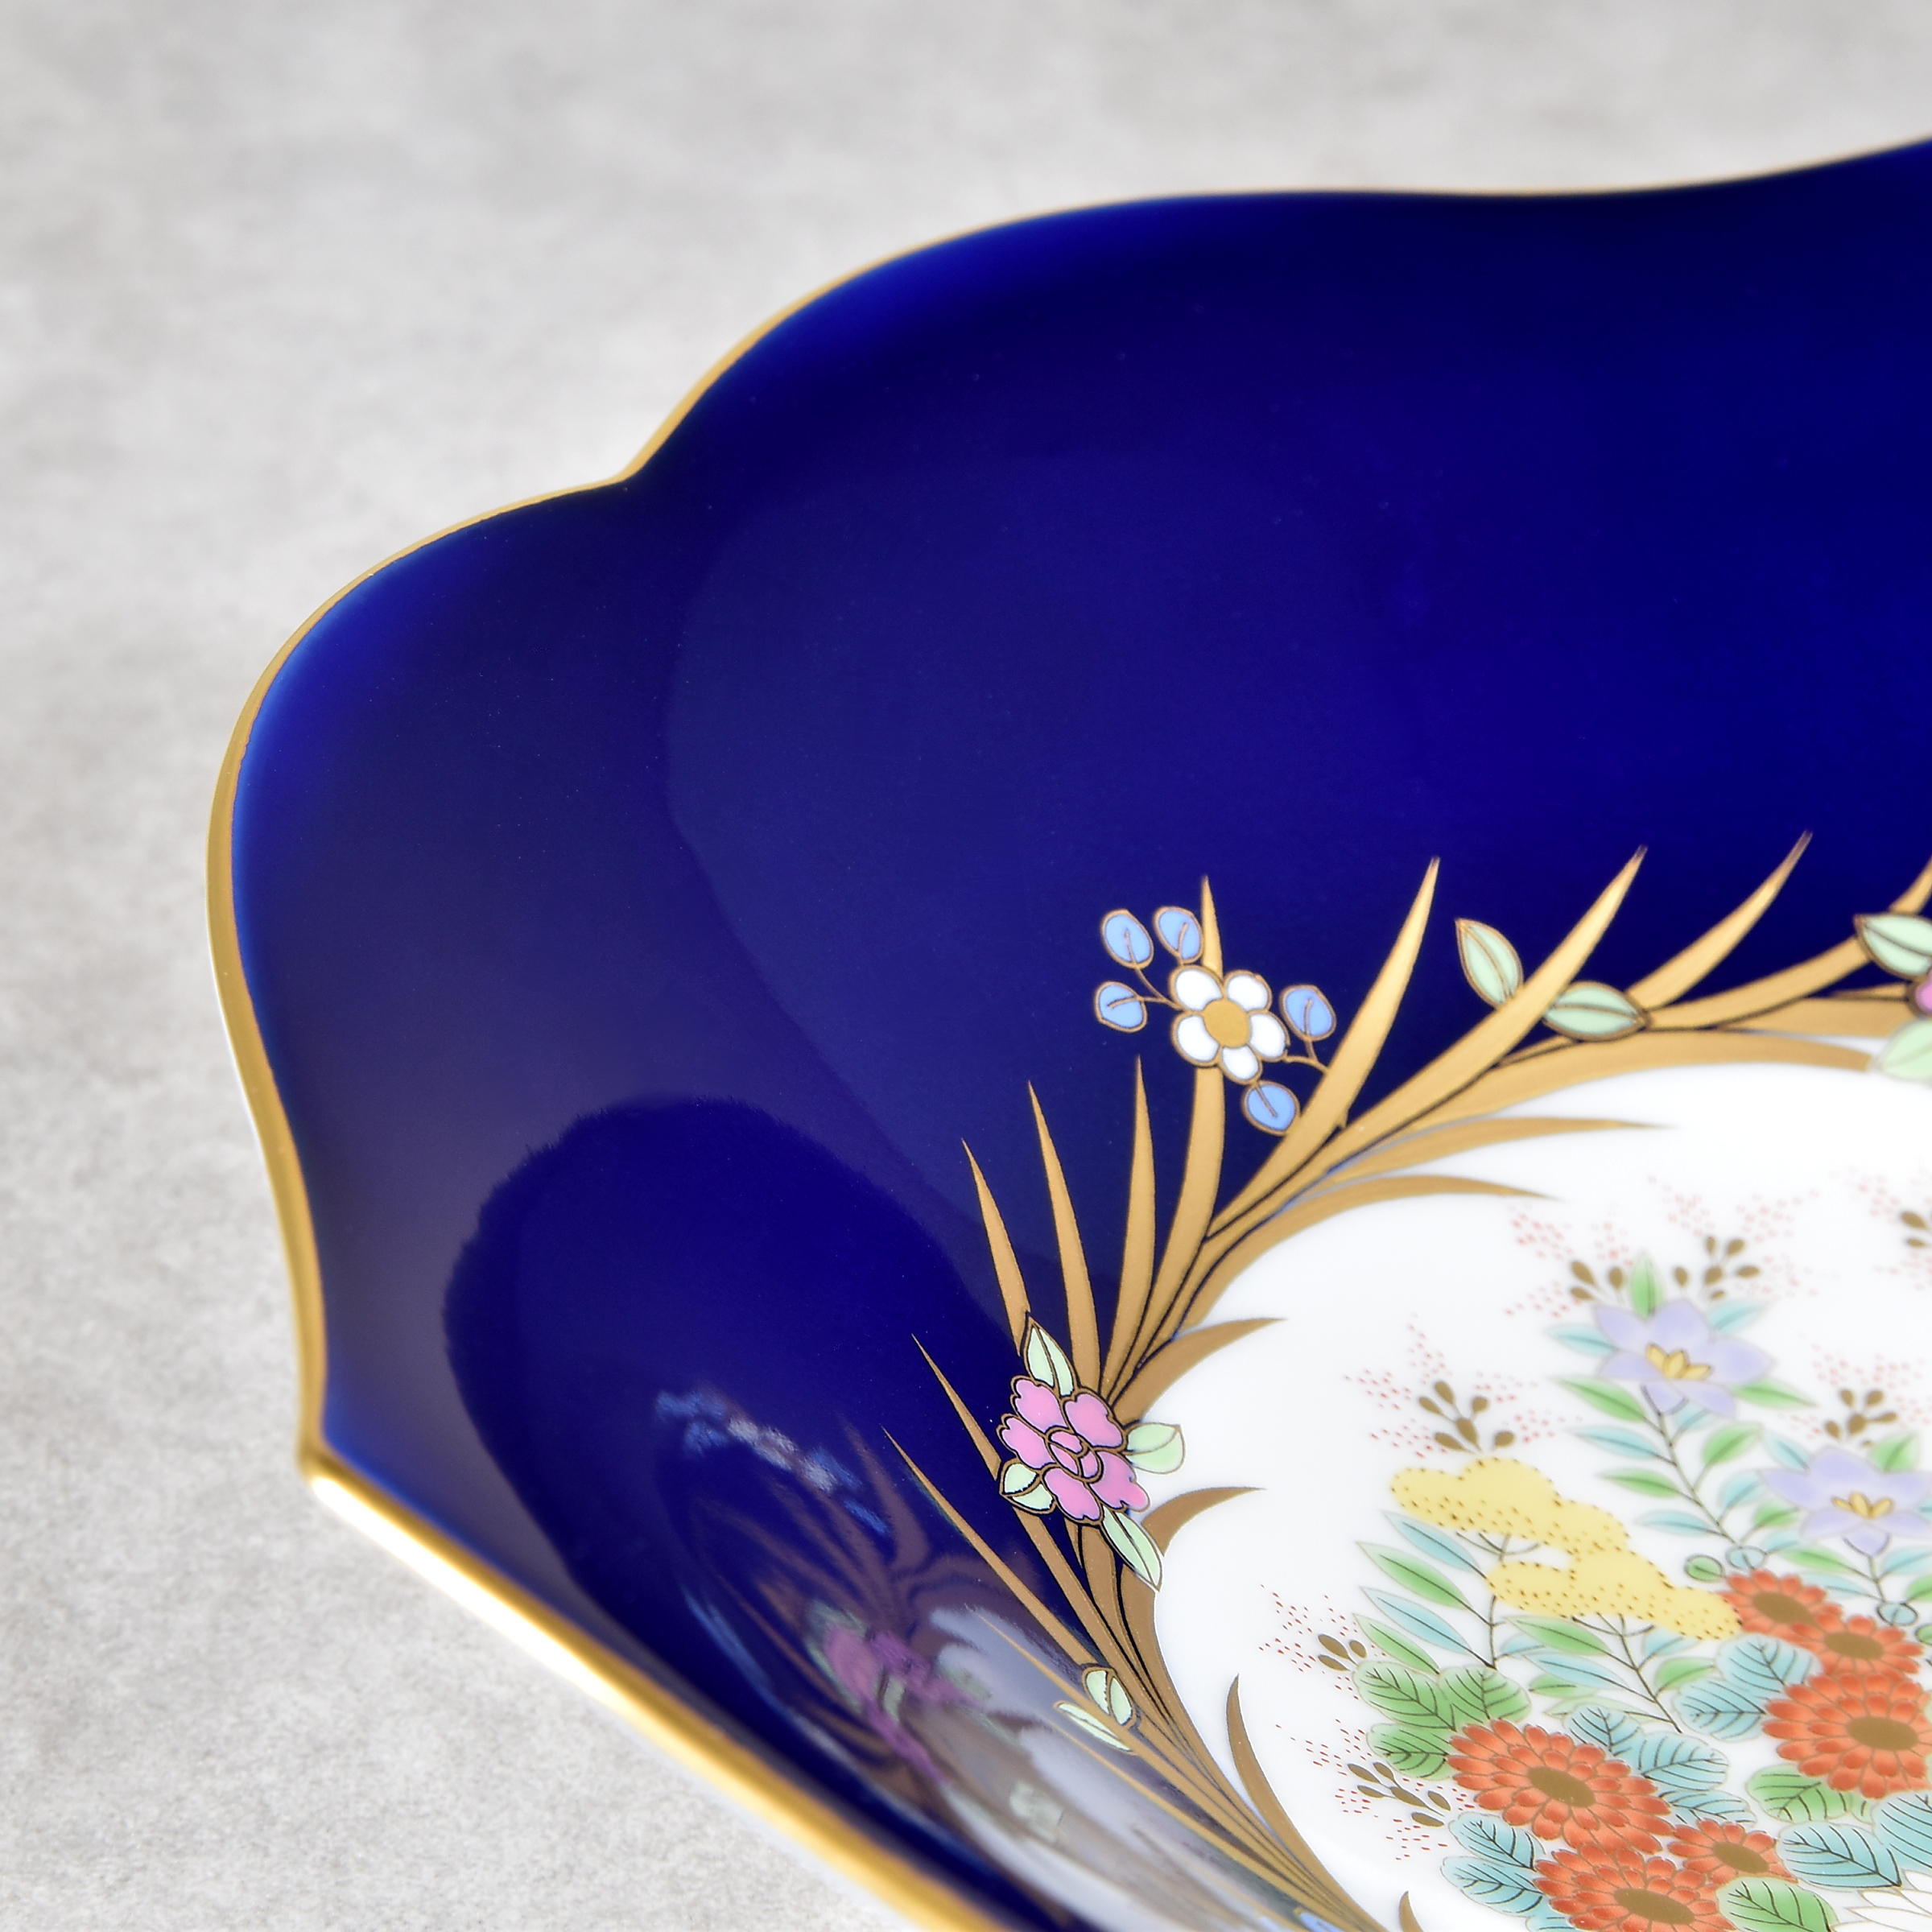 ロイヤルブルーともいわれる香蘭社の瑠璃色がとても美しいです。